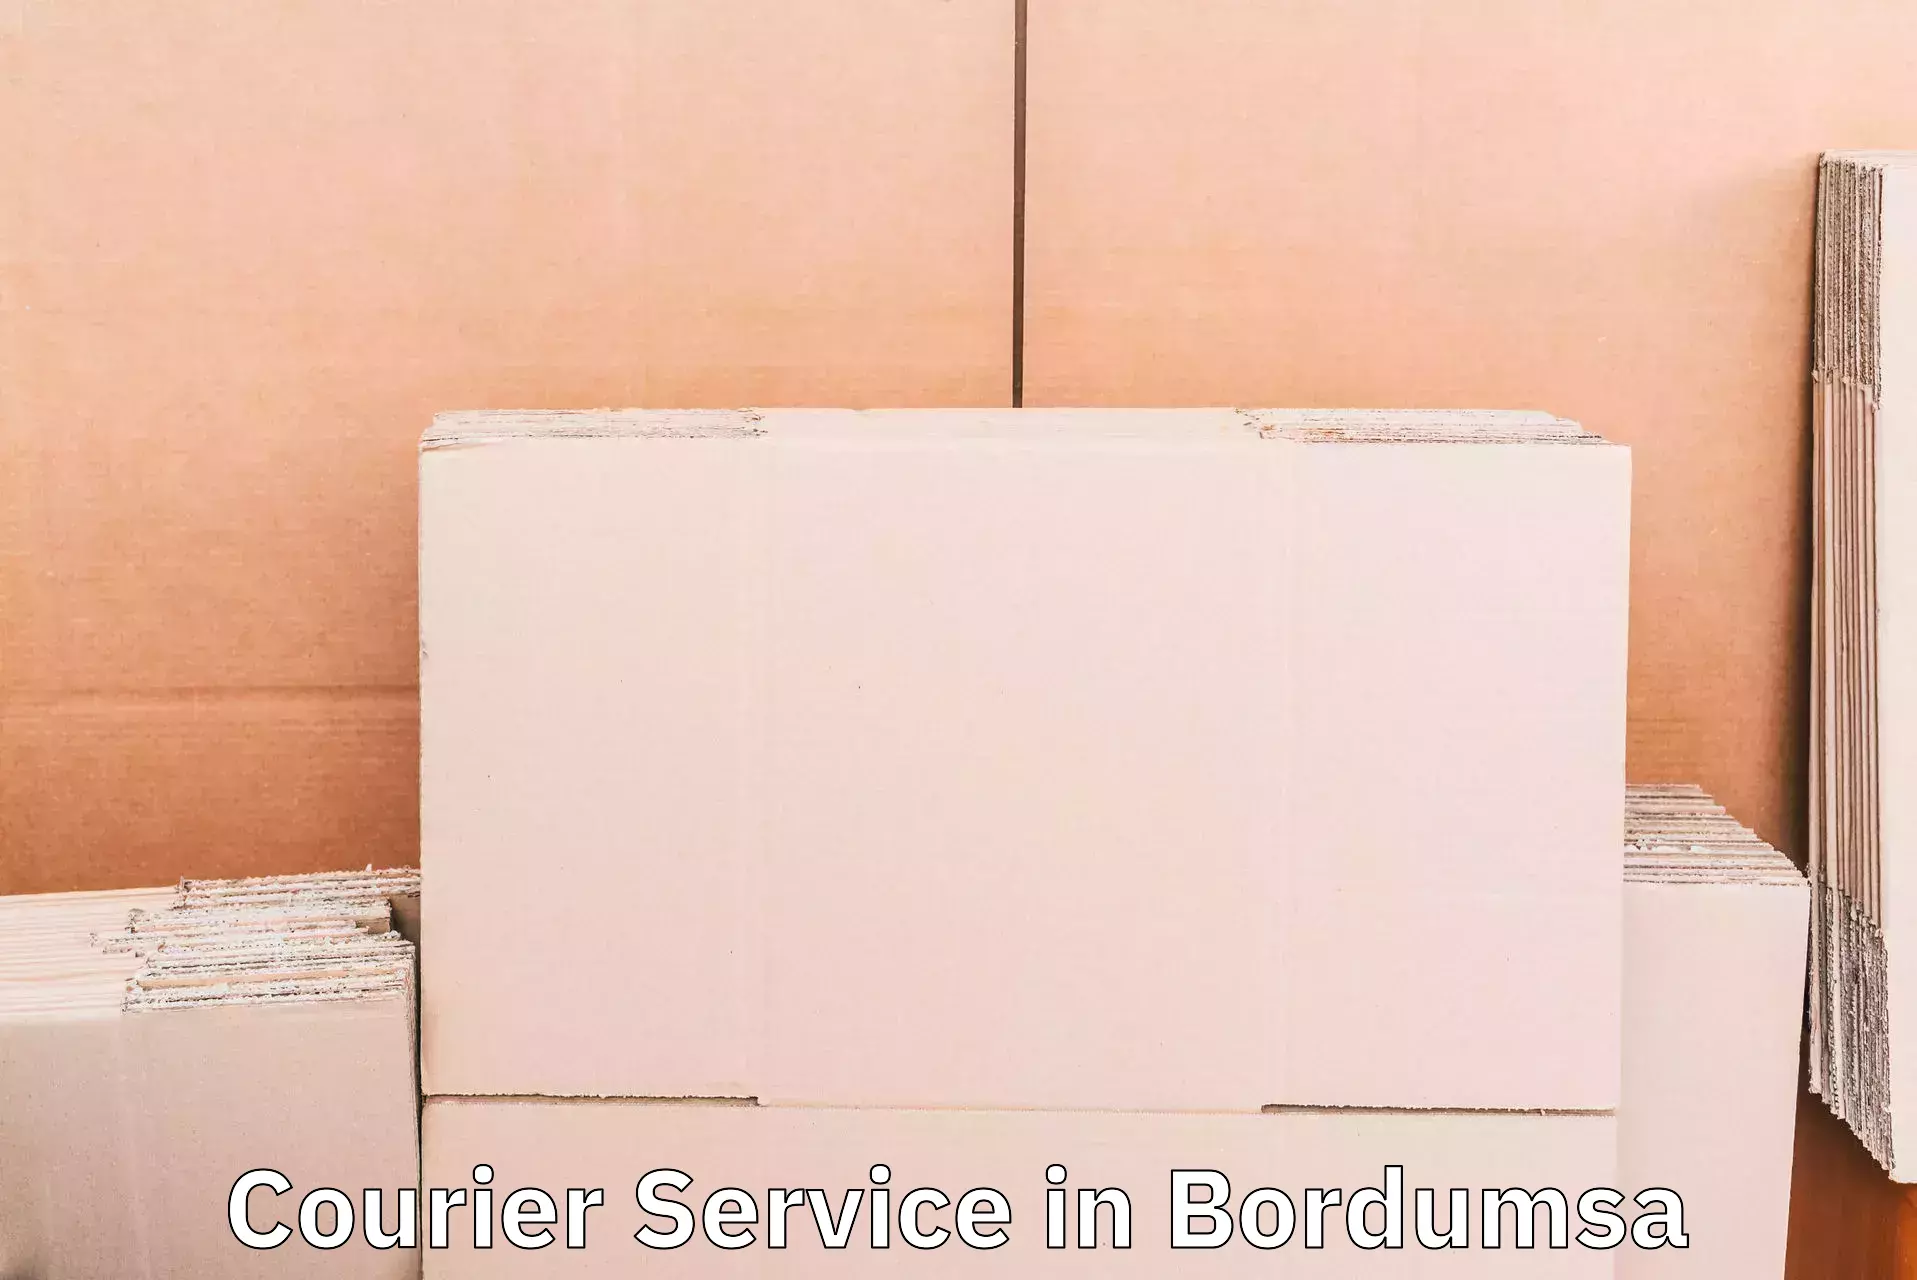 Urban courier service in Bordumsa